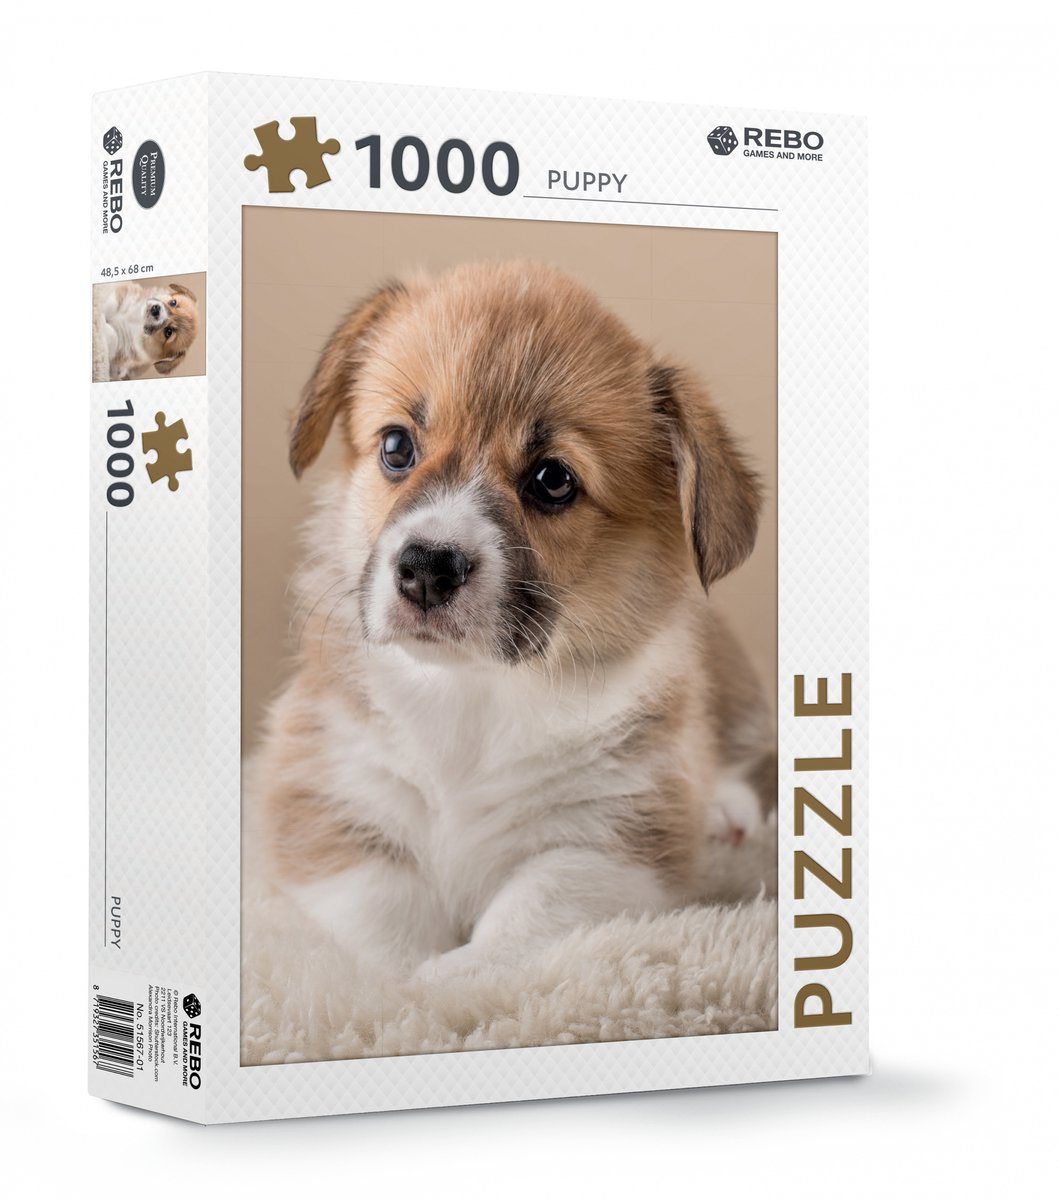 Rebo Puzzel Puppy 1000 Stukjes